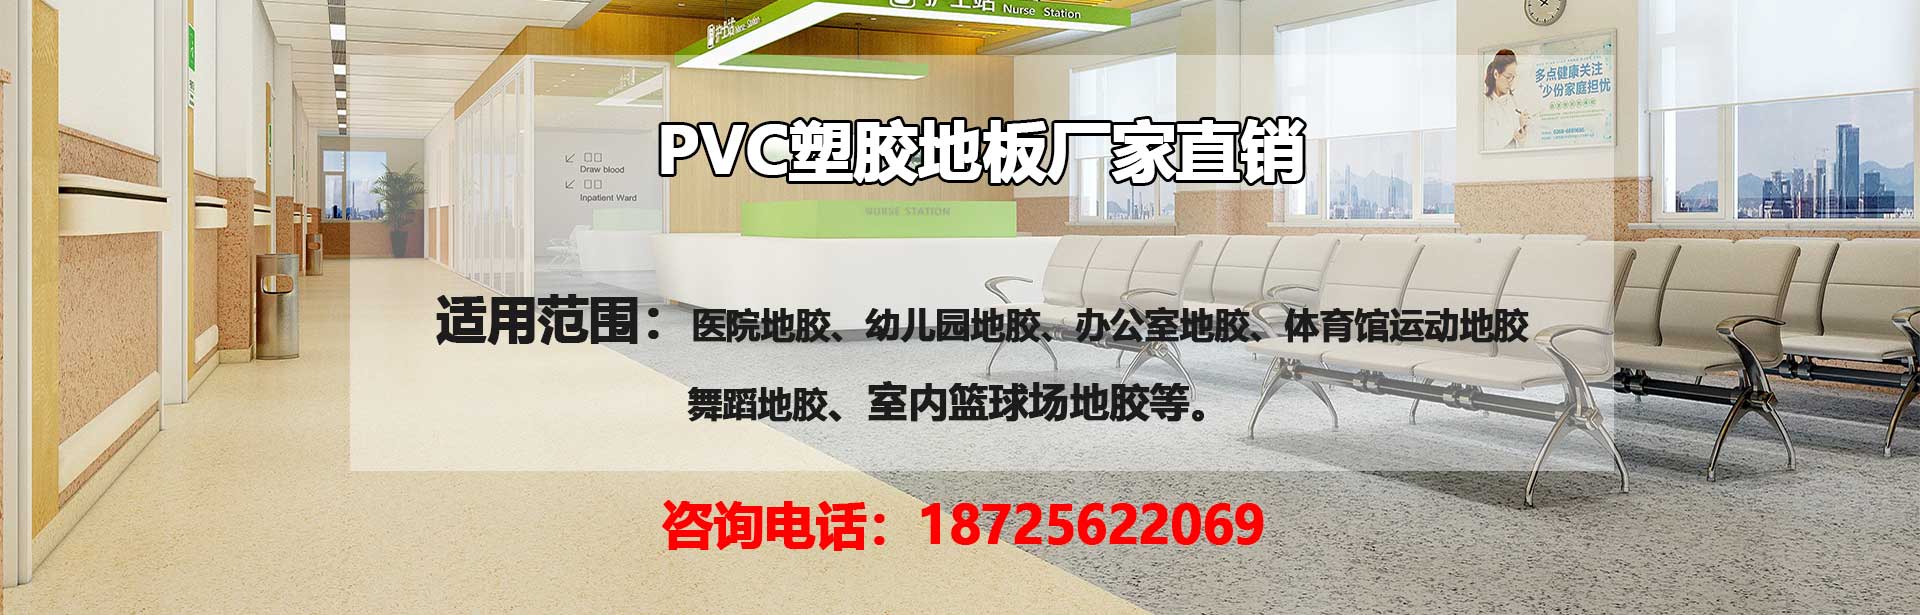 肇庆PVC塑胶地板